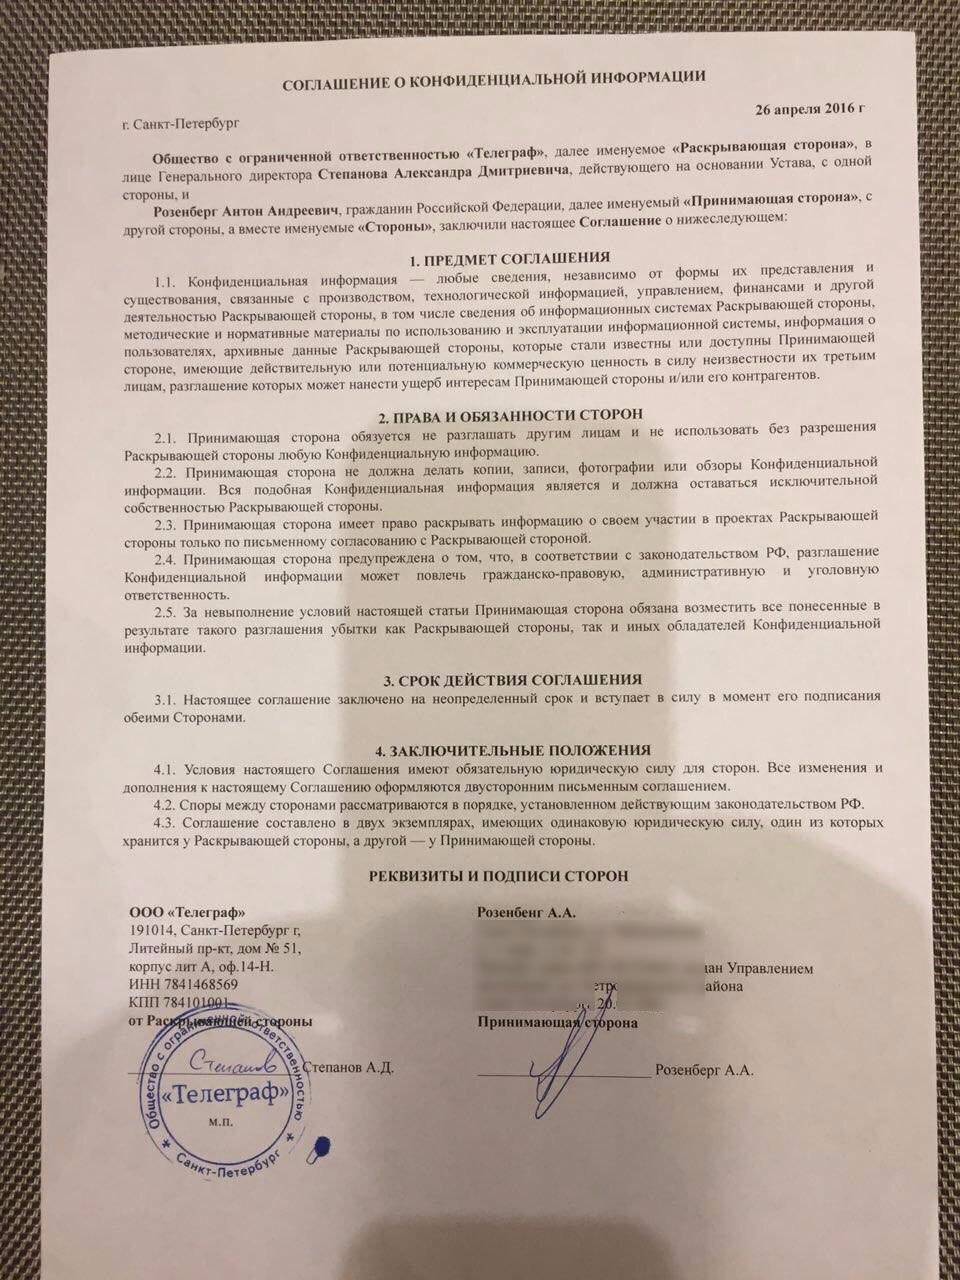 Соглашение о конфиденциальности - образец рб 2022. белформа - бланки документов, беларусь